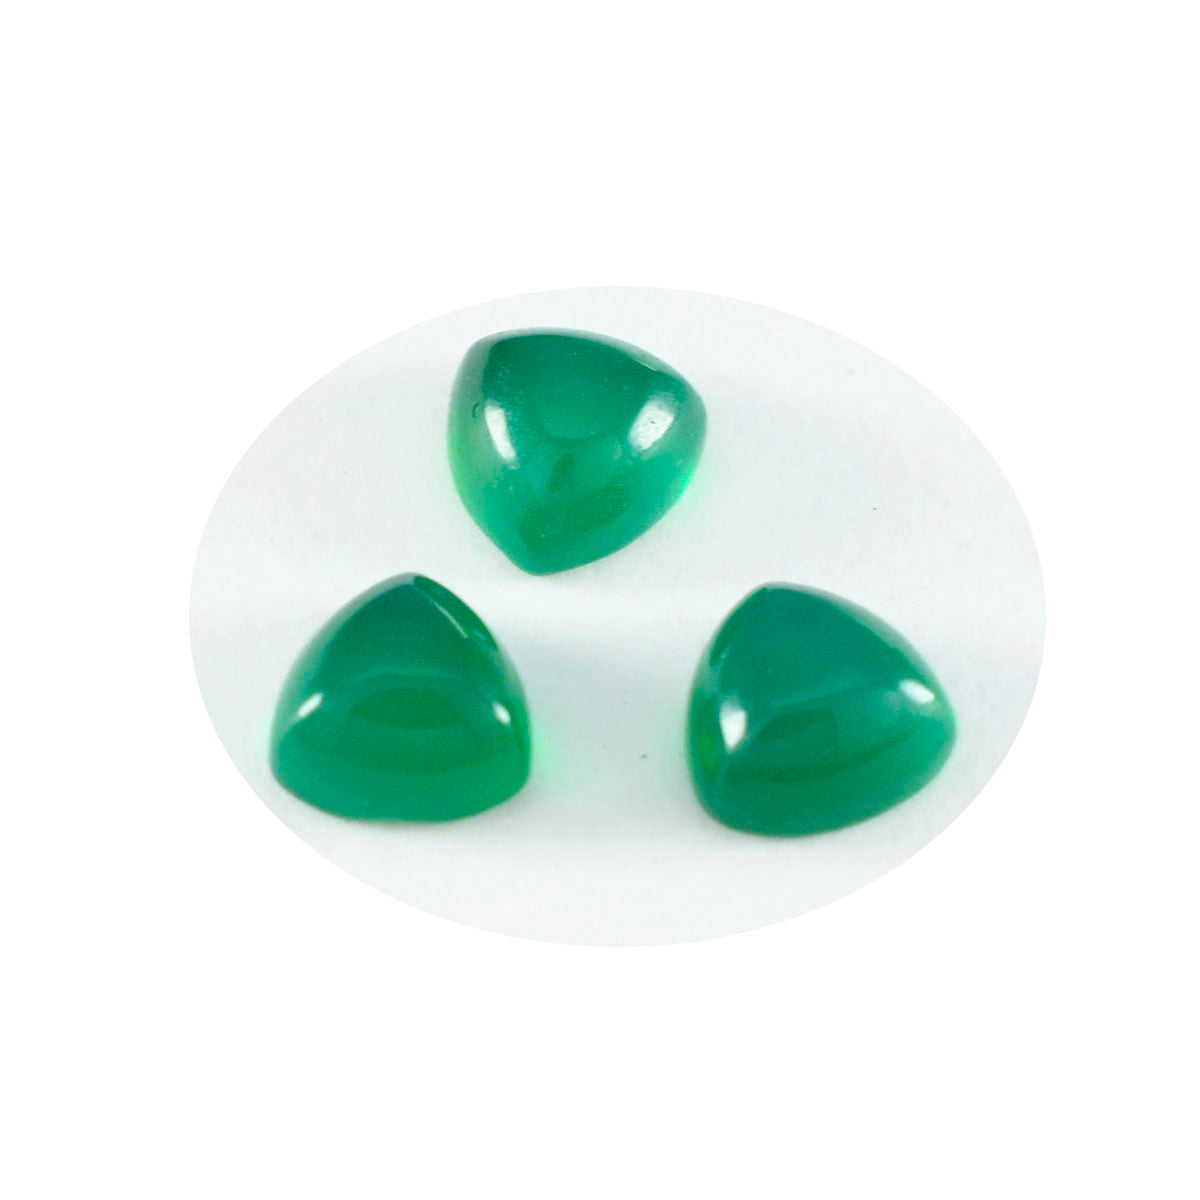 Riyogems 1 Stück grüner Onyx-Cabochon, 11 x 11 mm, Billionenform, süßer, hochwertiger loser Stein